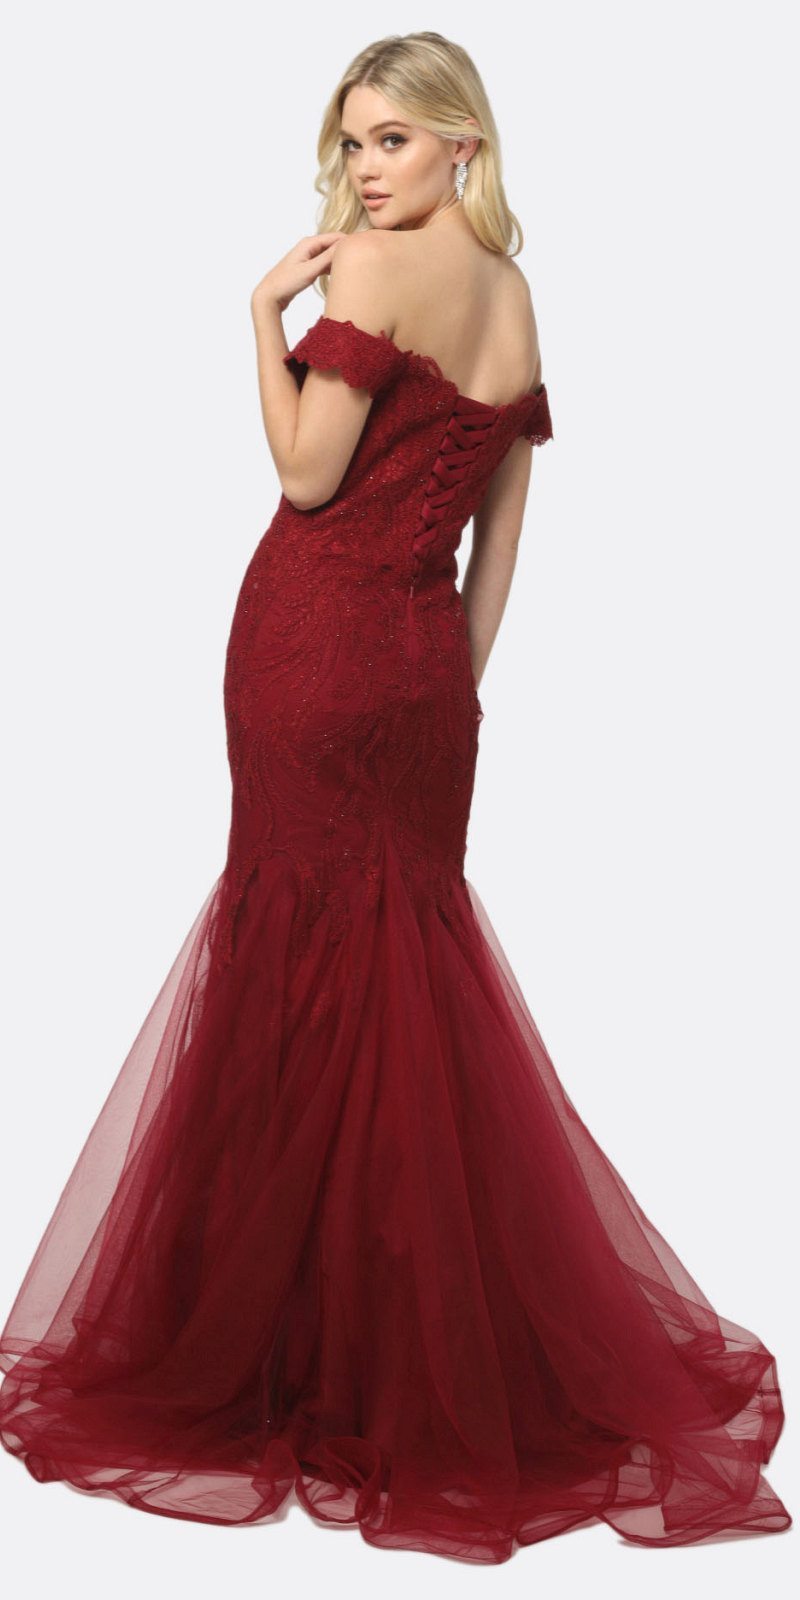 Juliet 693 Embellished Lace Off the Shoulder Burgundy Mermaid Prom Dress